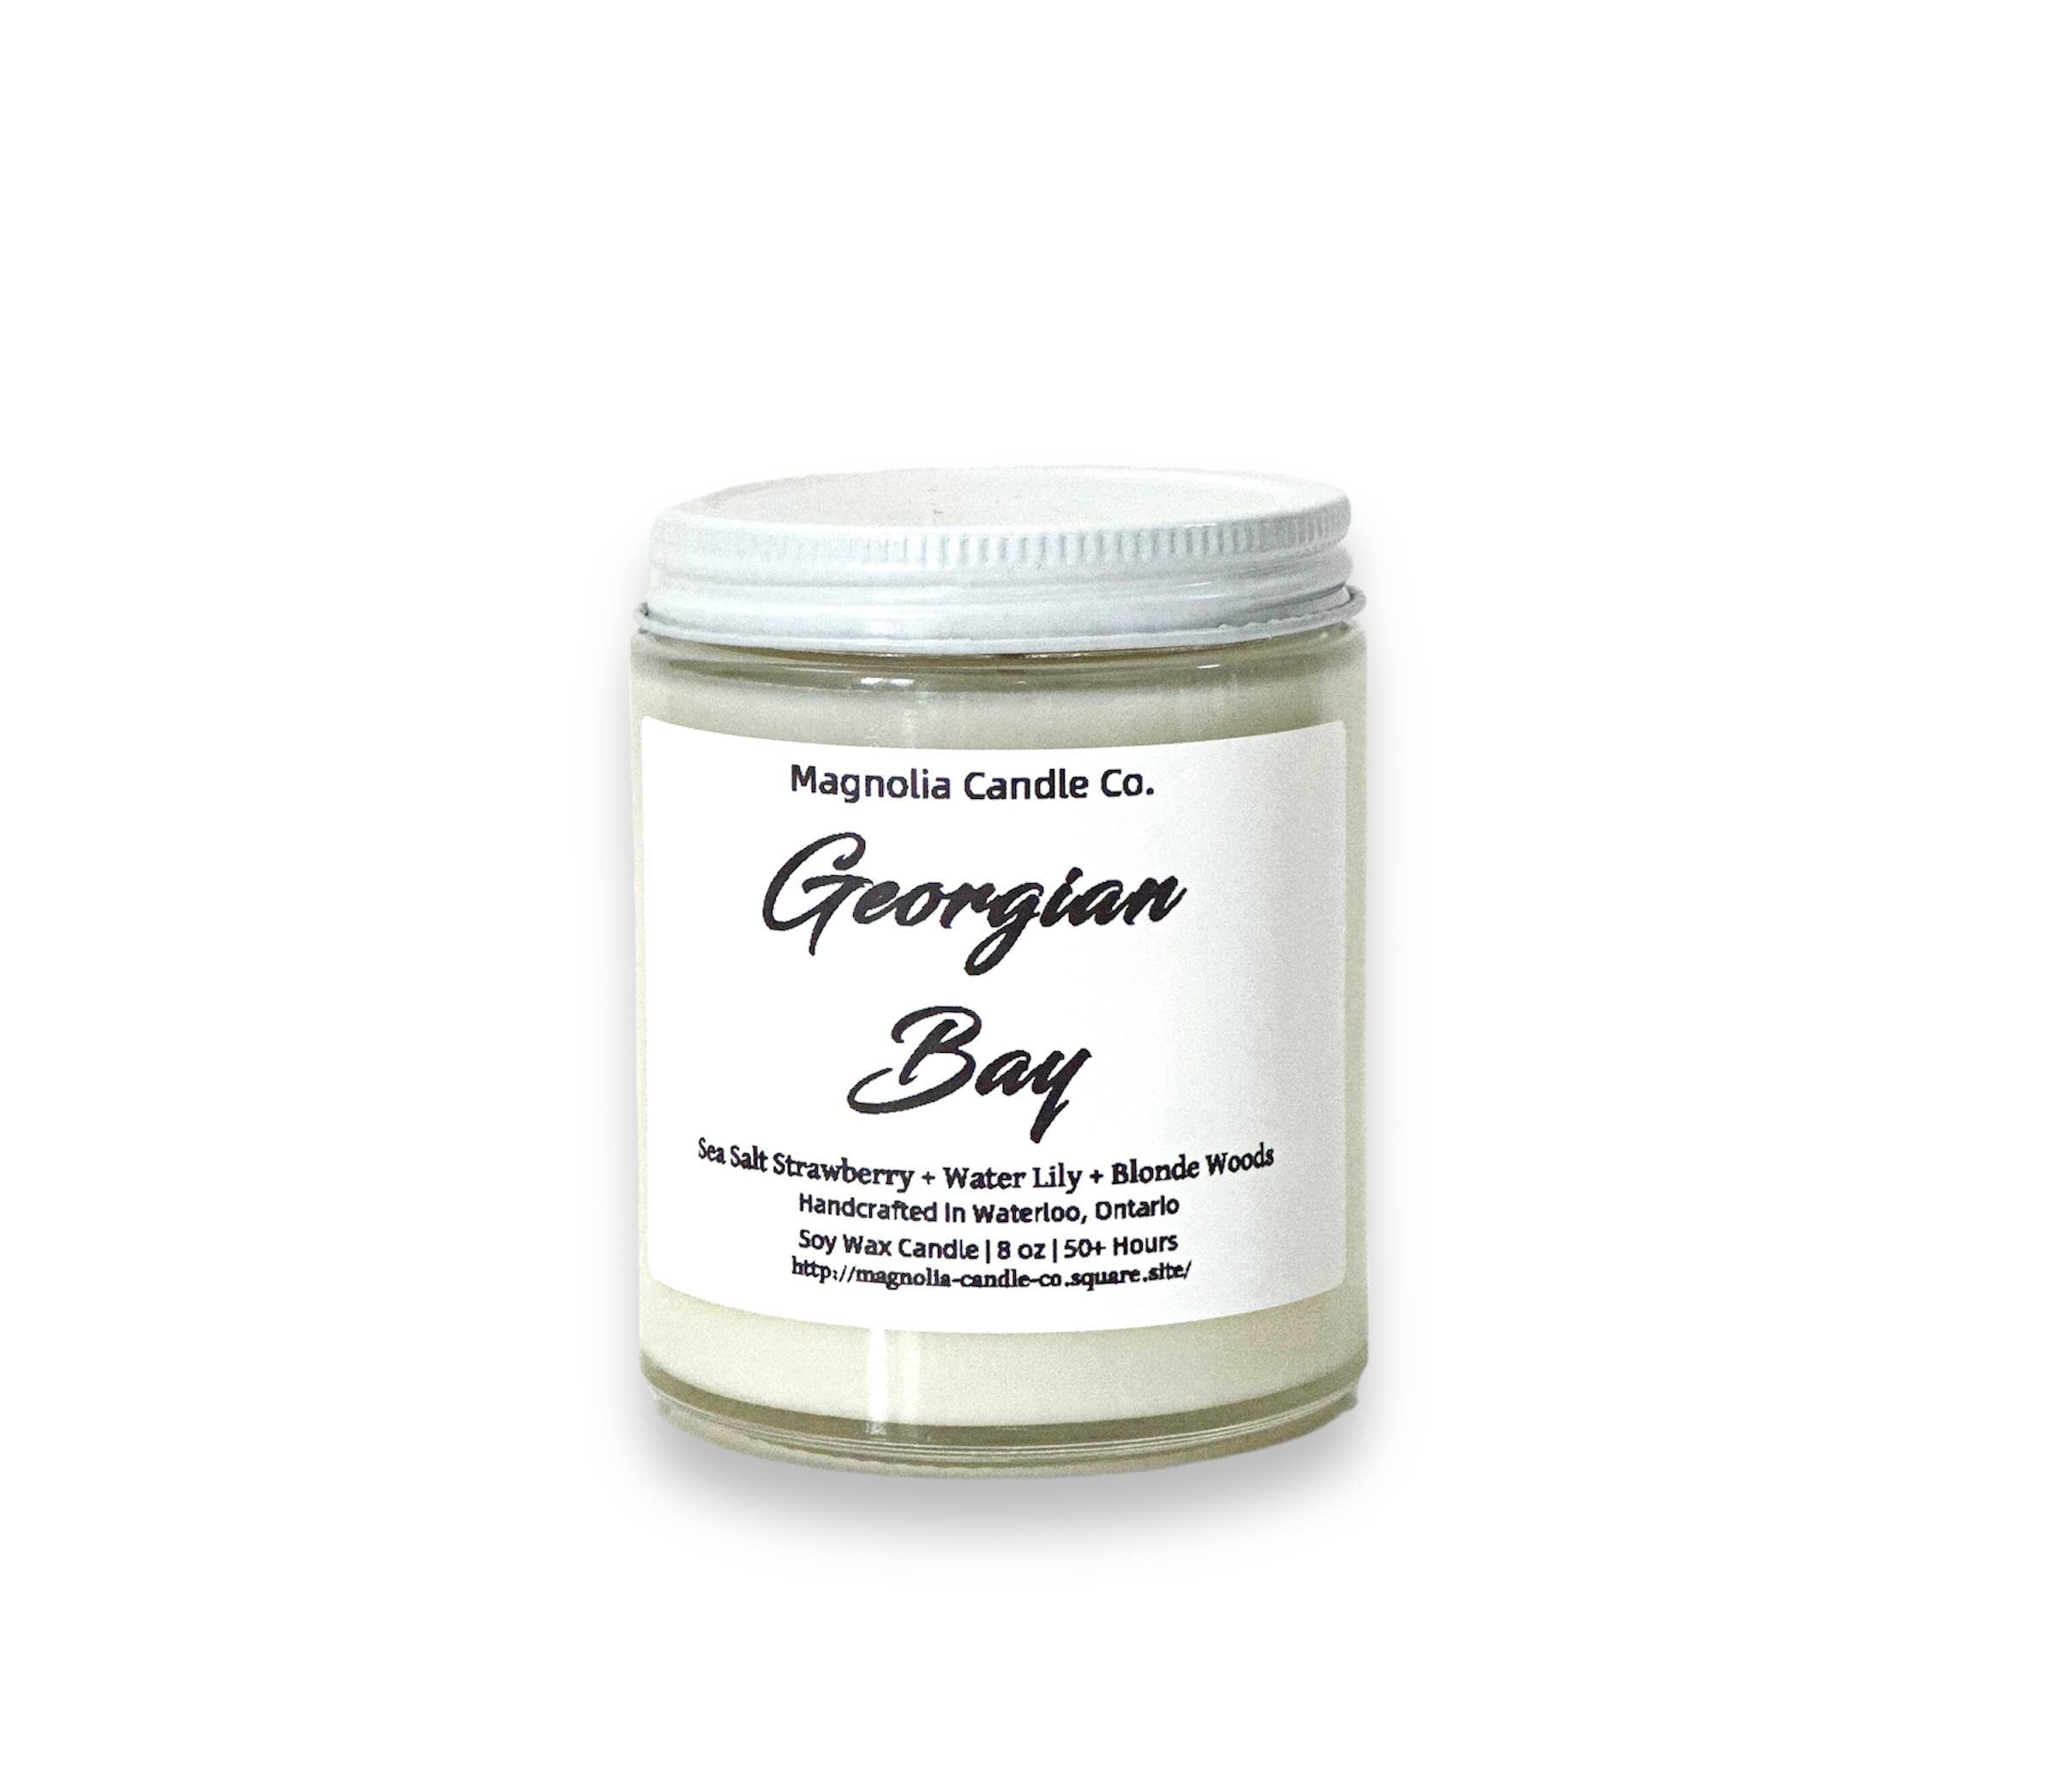 Georgian Bay -  Soy Candle - Clear Glass Jar: 8 oz